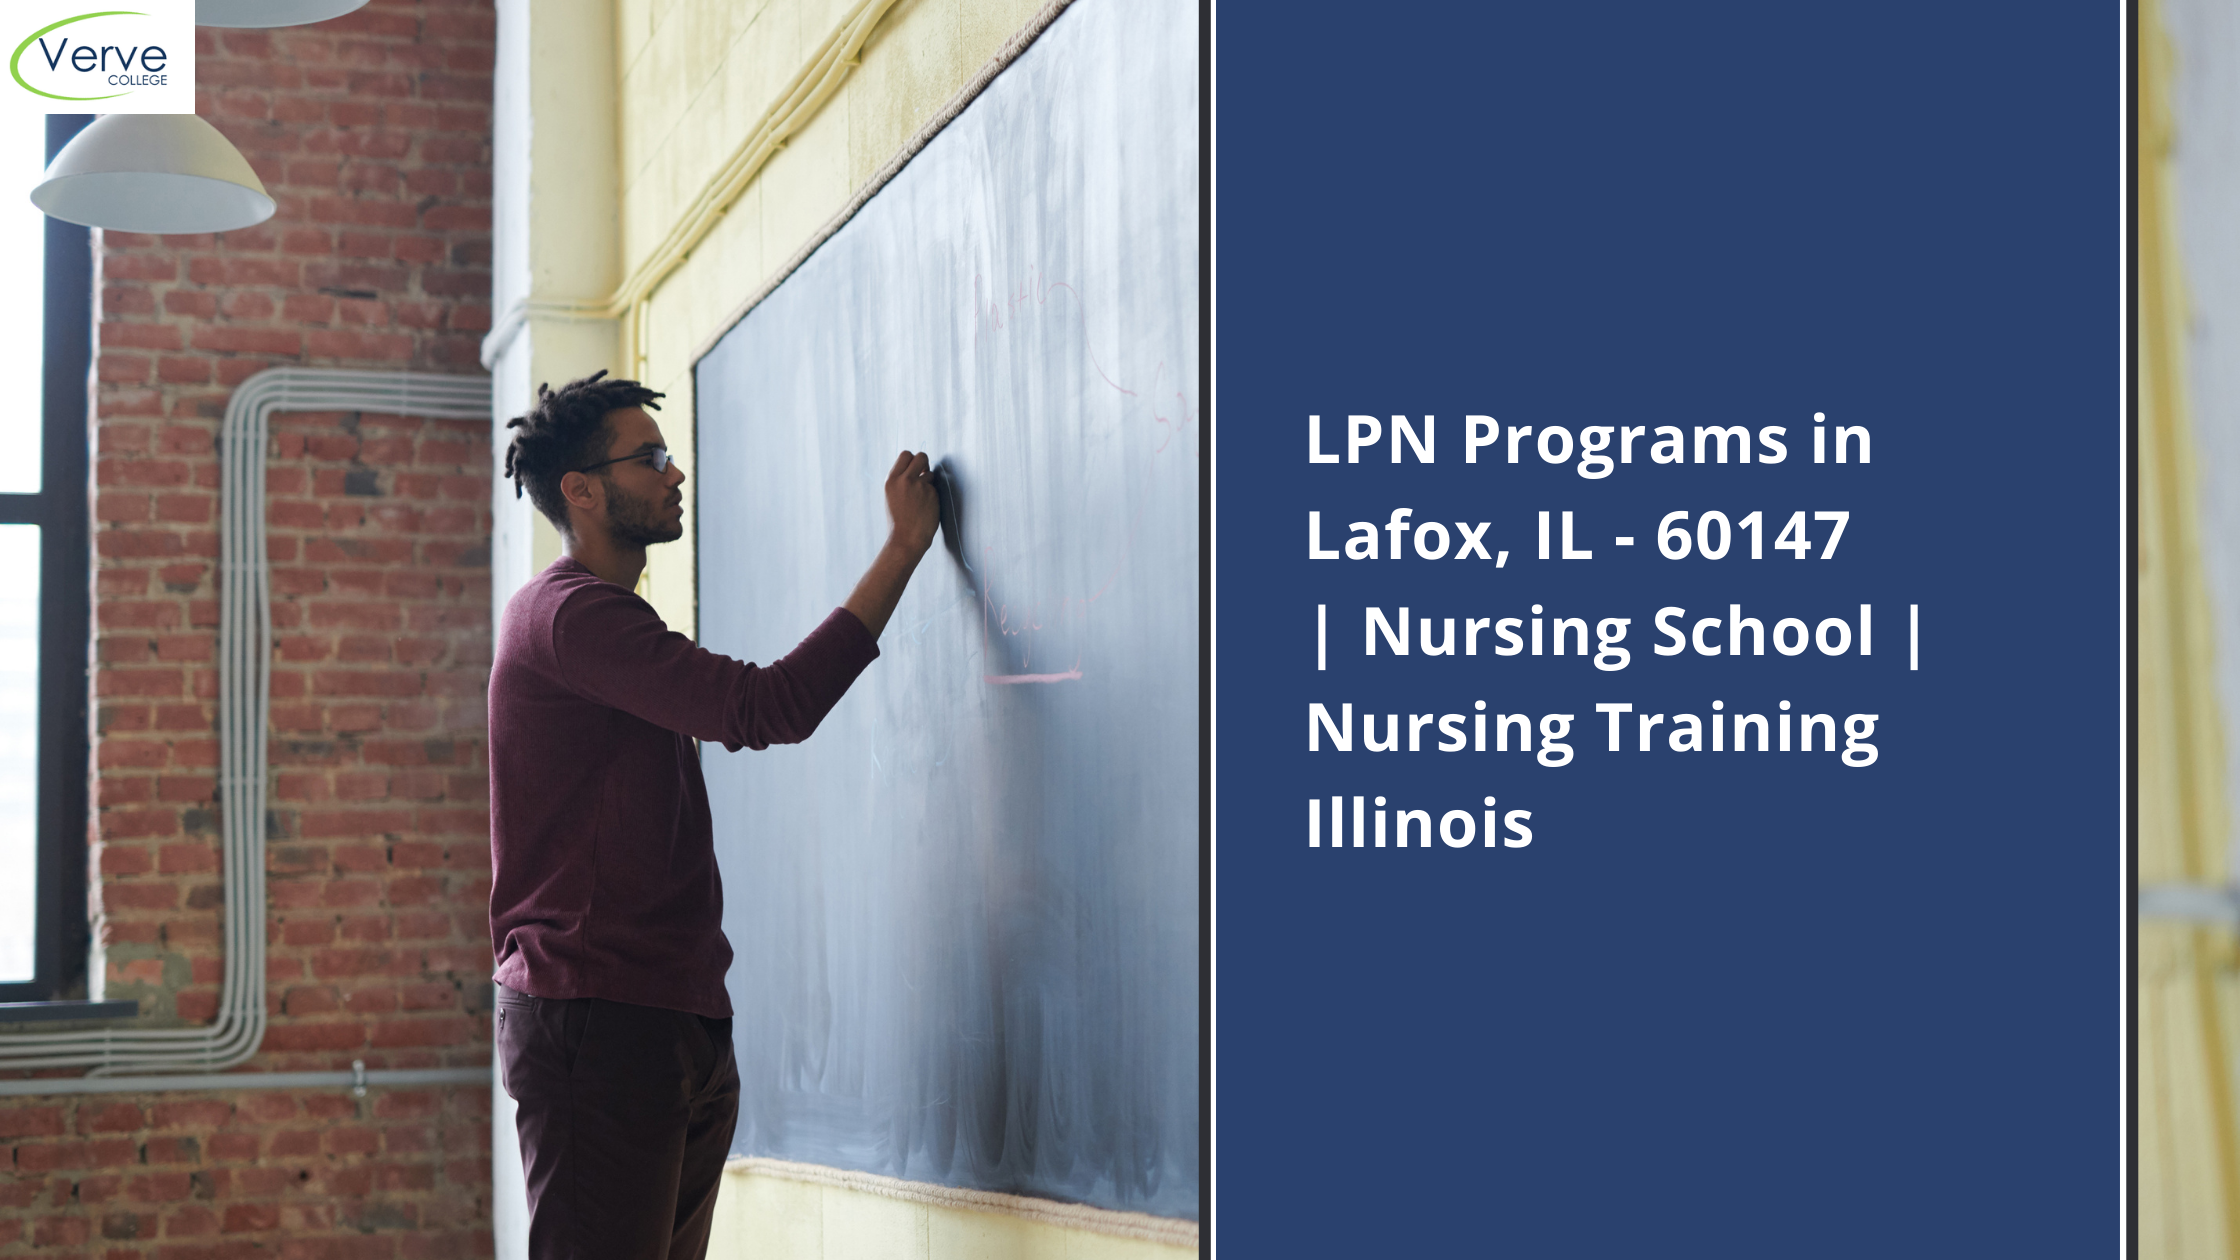 LPN Programs in Lafox, IL – 60147 | Nursing School | Nursing Training Illinois